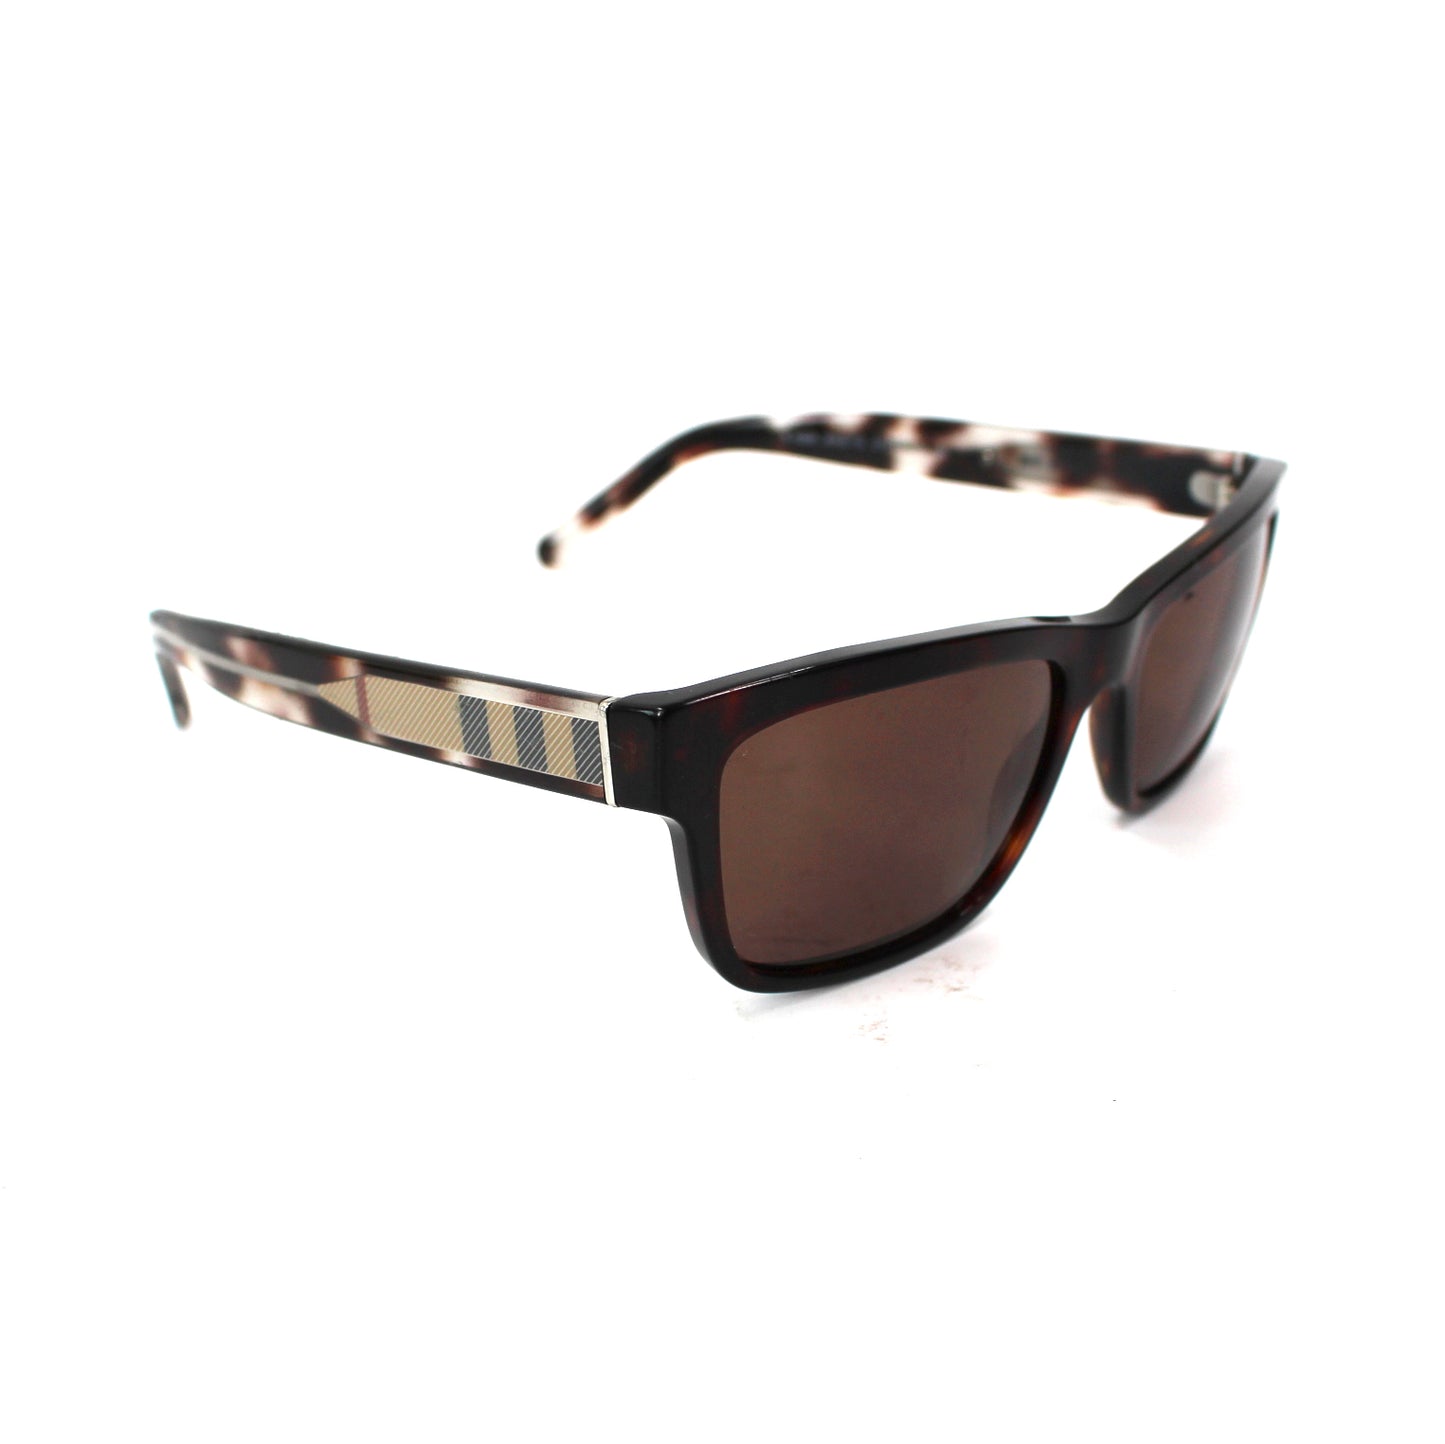 Burberry Tortoise Nova Check Sunglasses